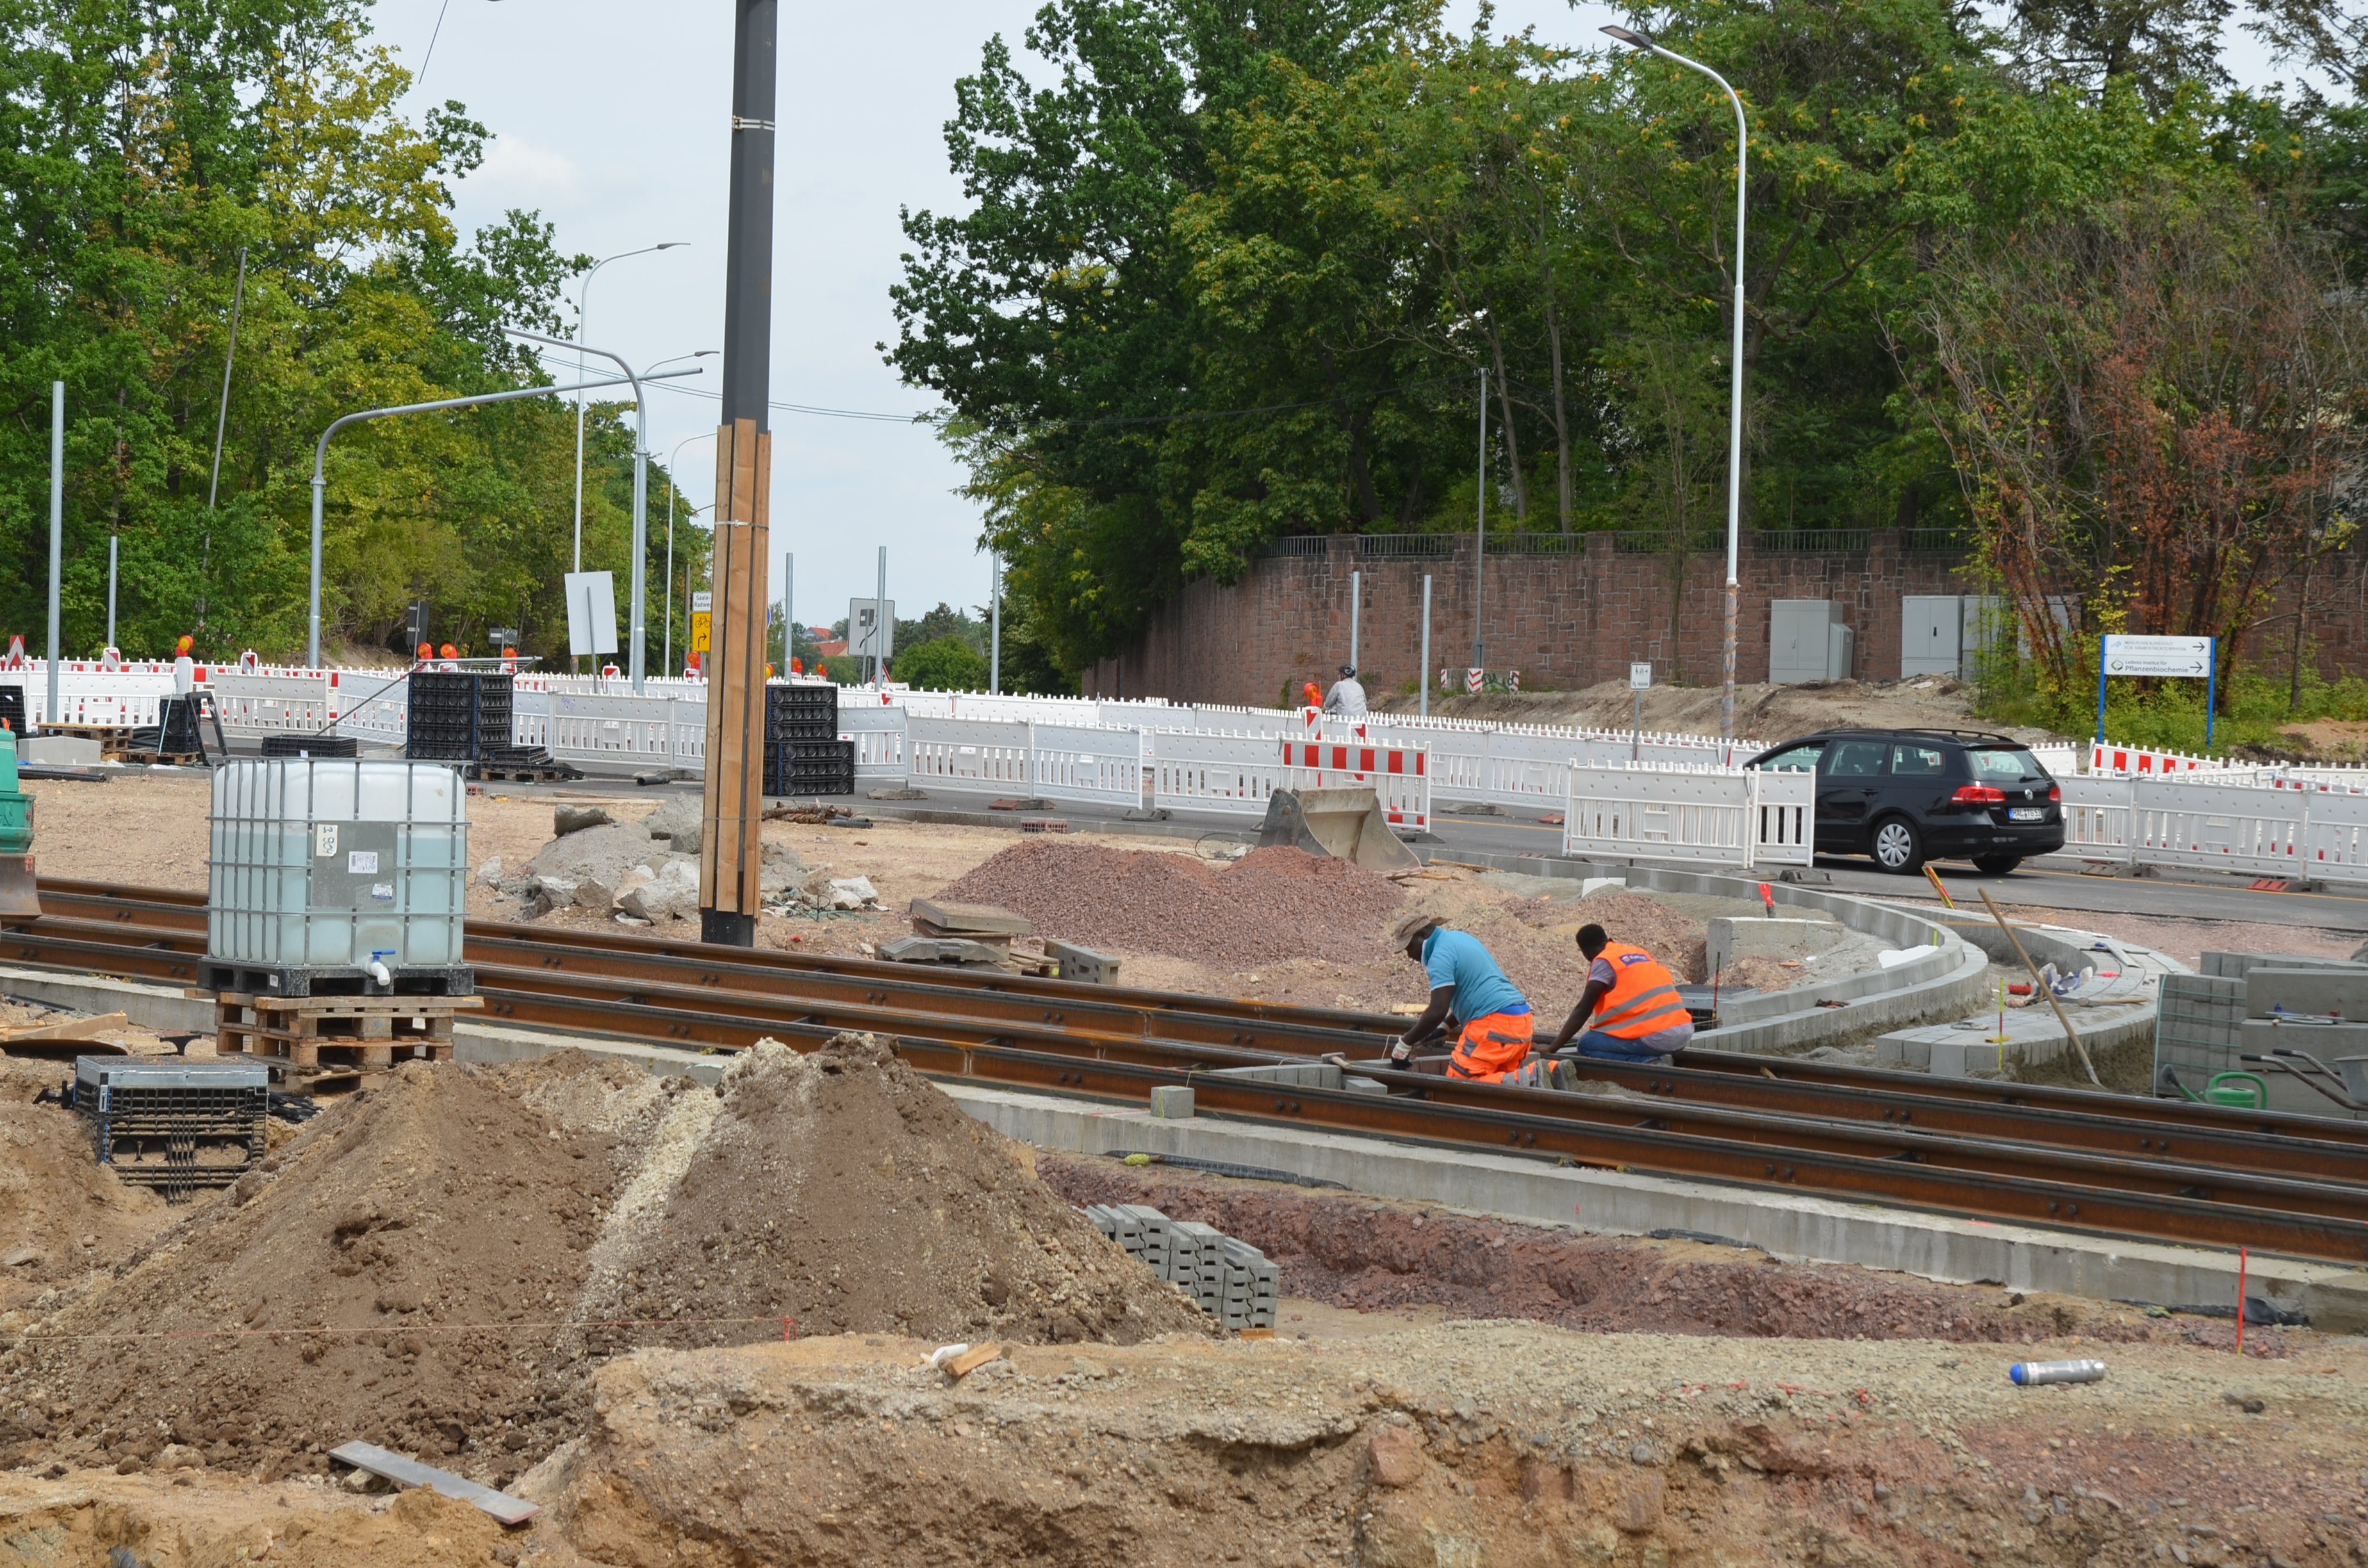 Hier ist die Baustelle am Kreisverkehr abgebildet. Von links nach rechts verlaufen Straßenbahnschienen durch das Bild, an denen zwei Bauarbeiter in orangefarbener Kleidung arbeiten. Um sie herum befinden sich aufgrund von Tiefbauarbeiten viele Sand- und Steinhügel.